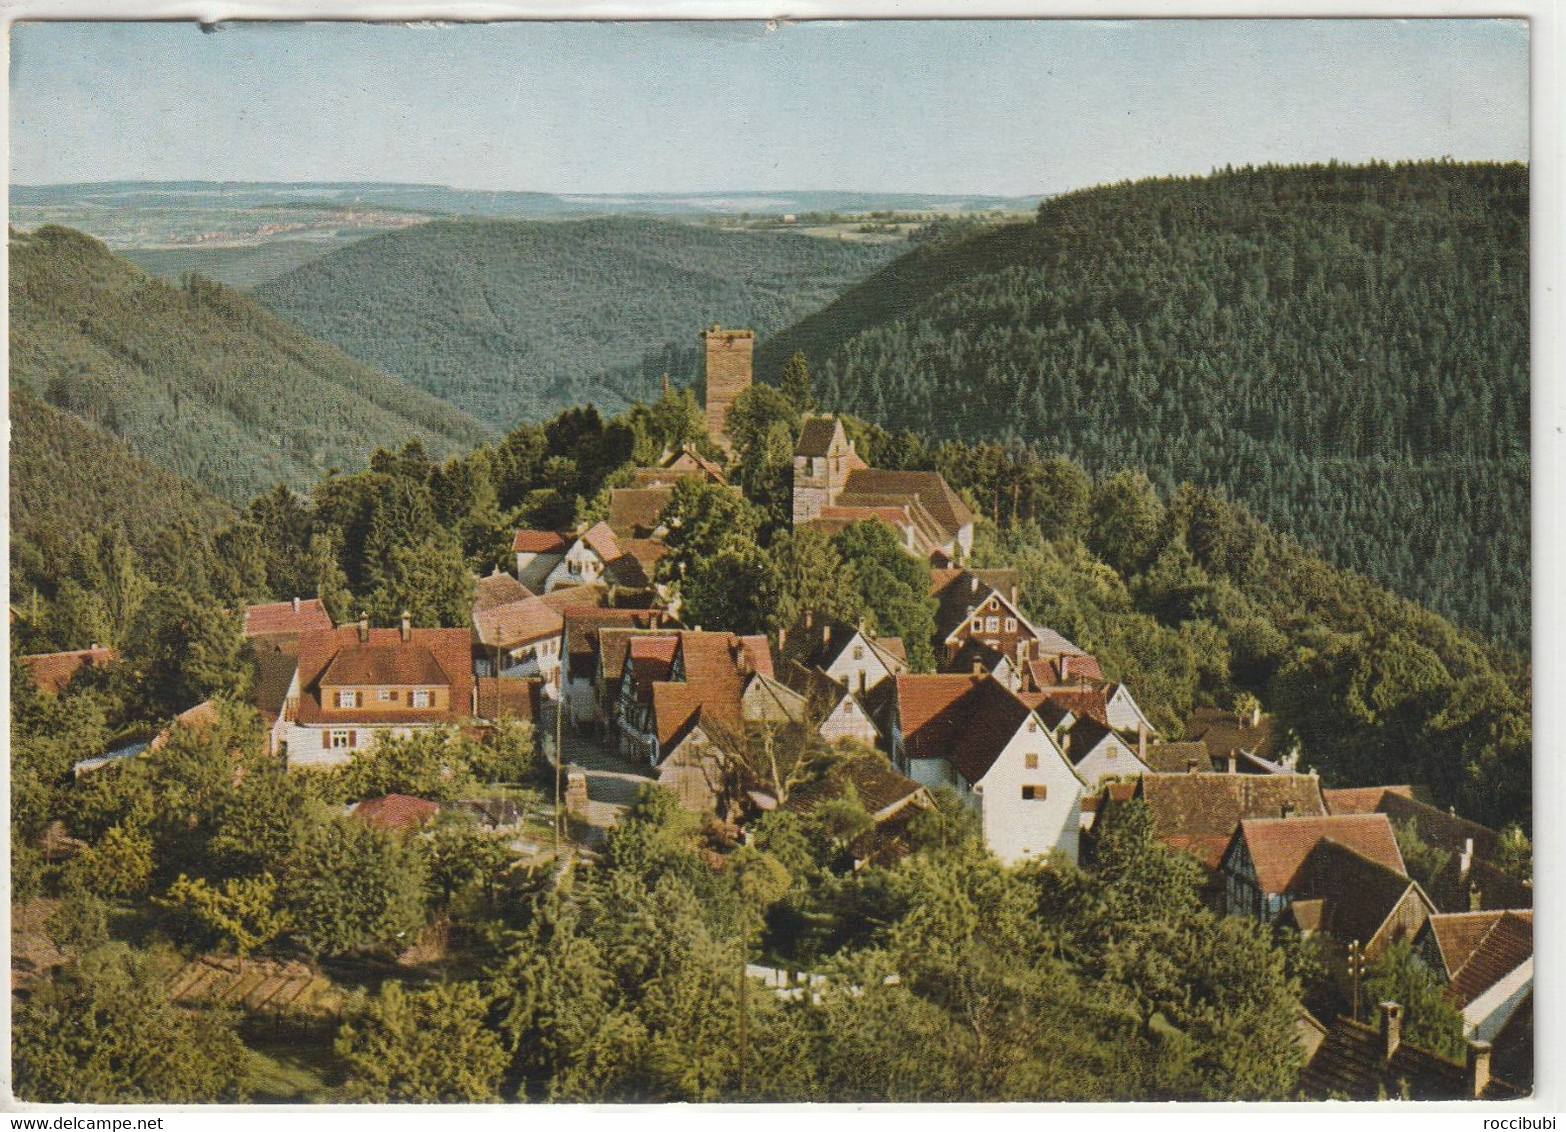 Zavelstein, Bad Teinach, Baden-Württemberg - Bad Teinach